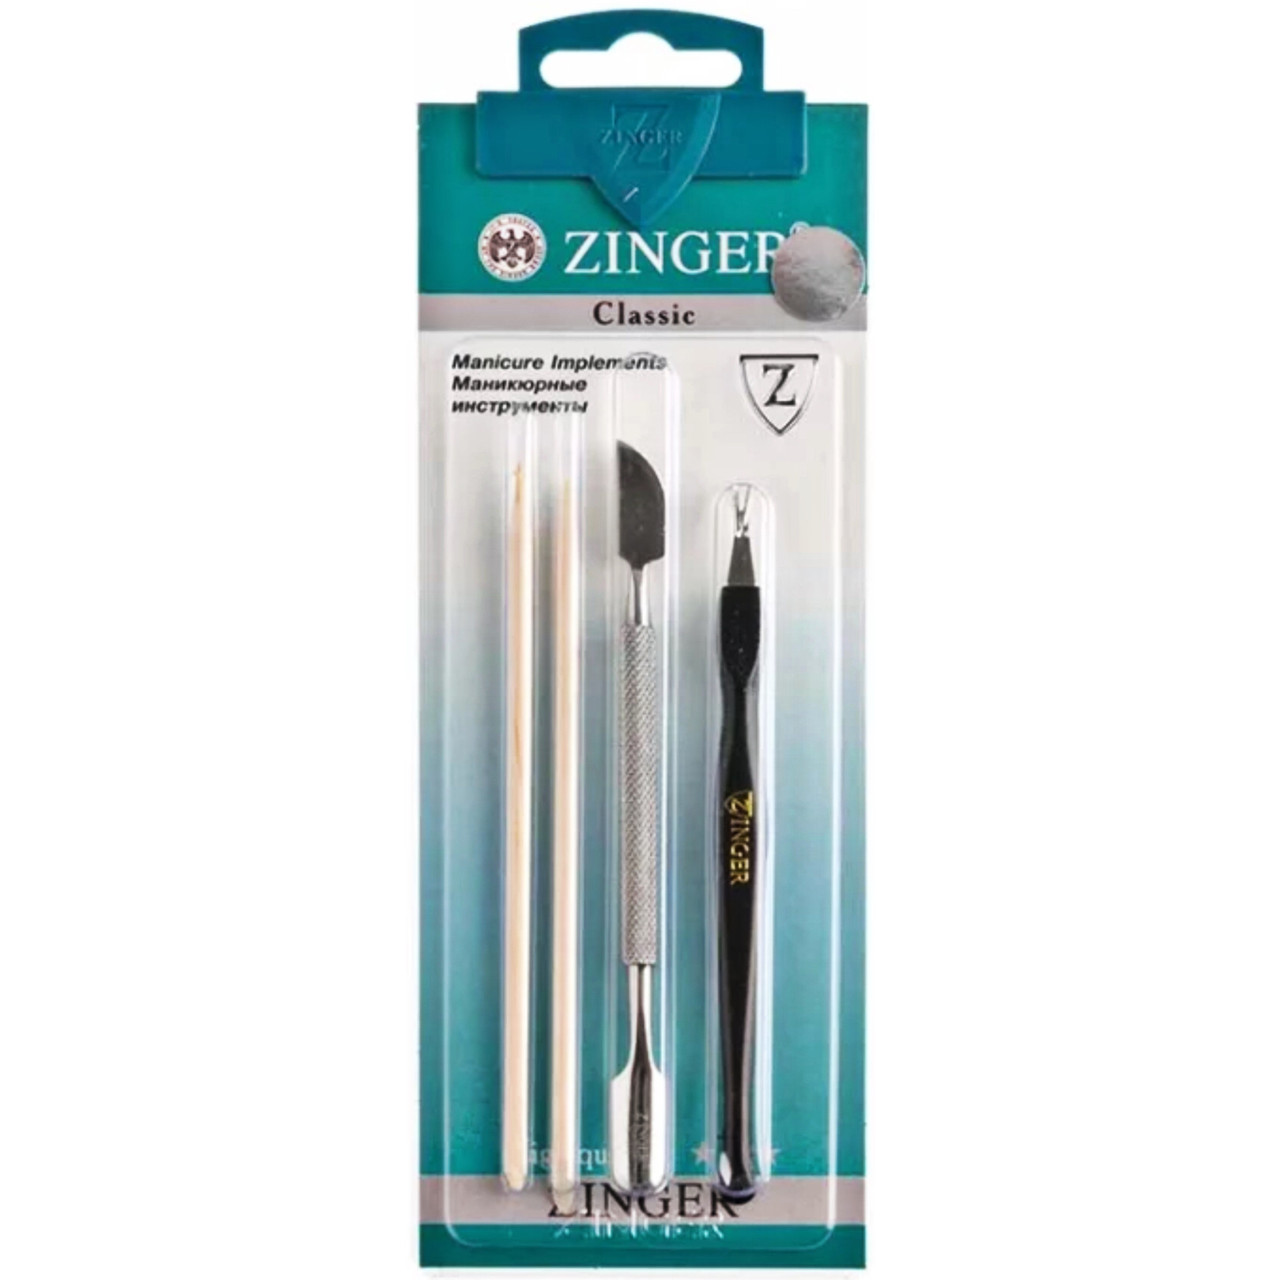 Набор маникюрных инструментов Zinger из 4 предметов (пушер, триммер, шабер, палочки)